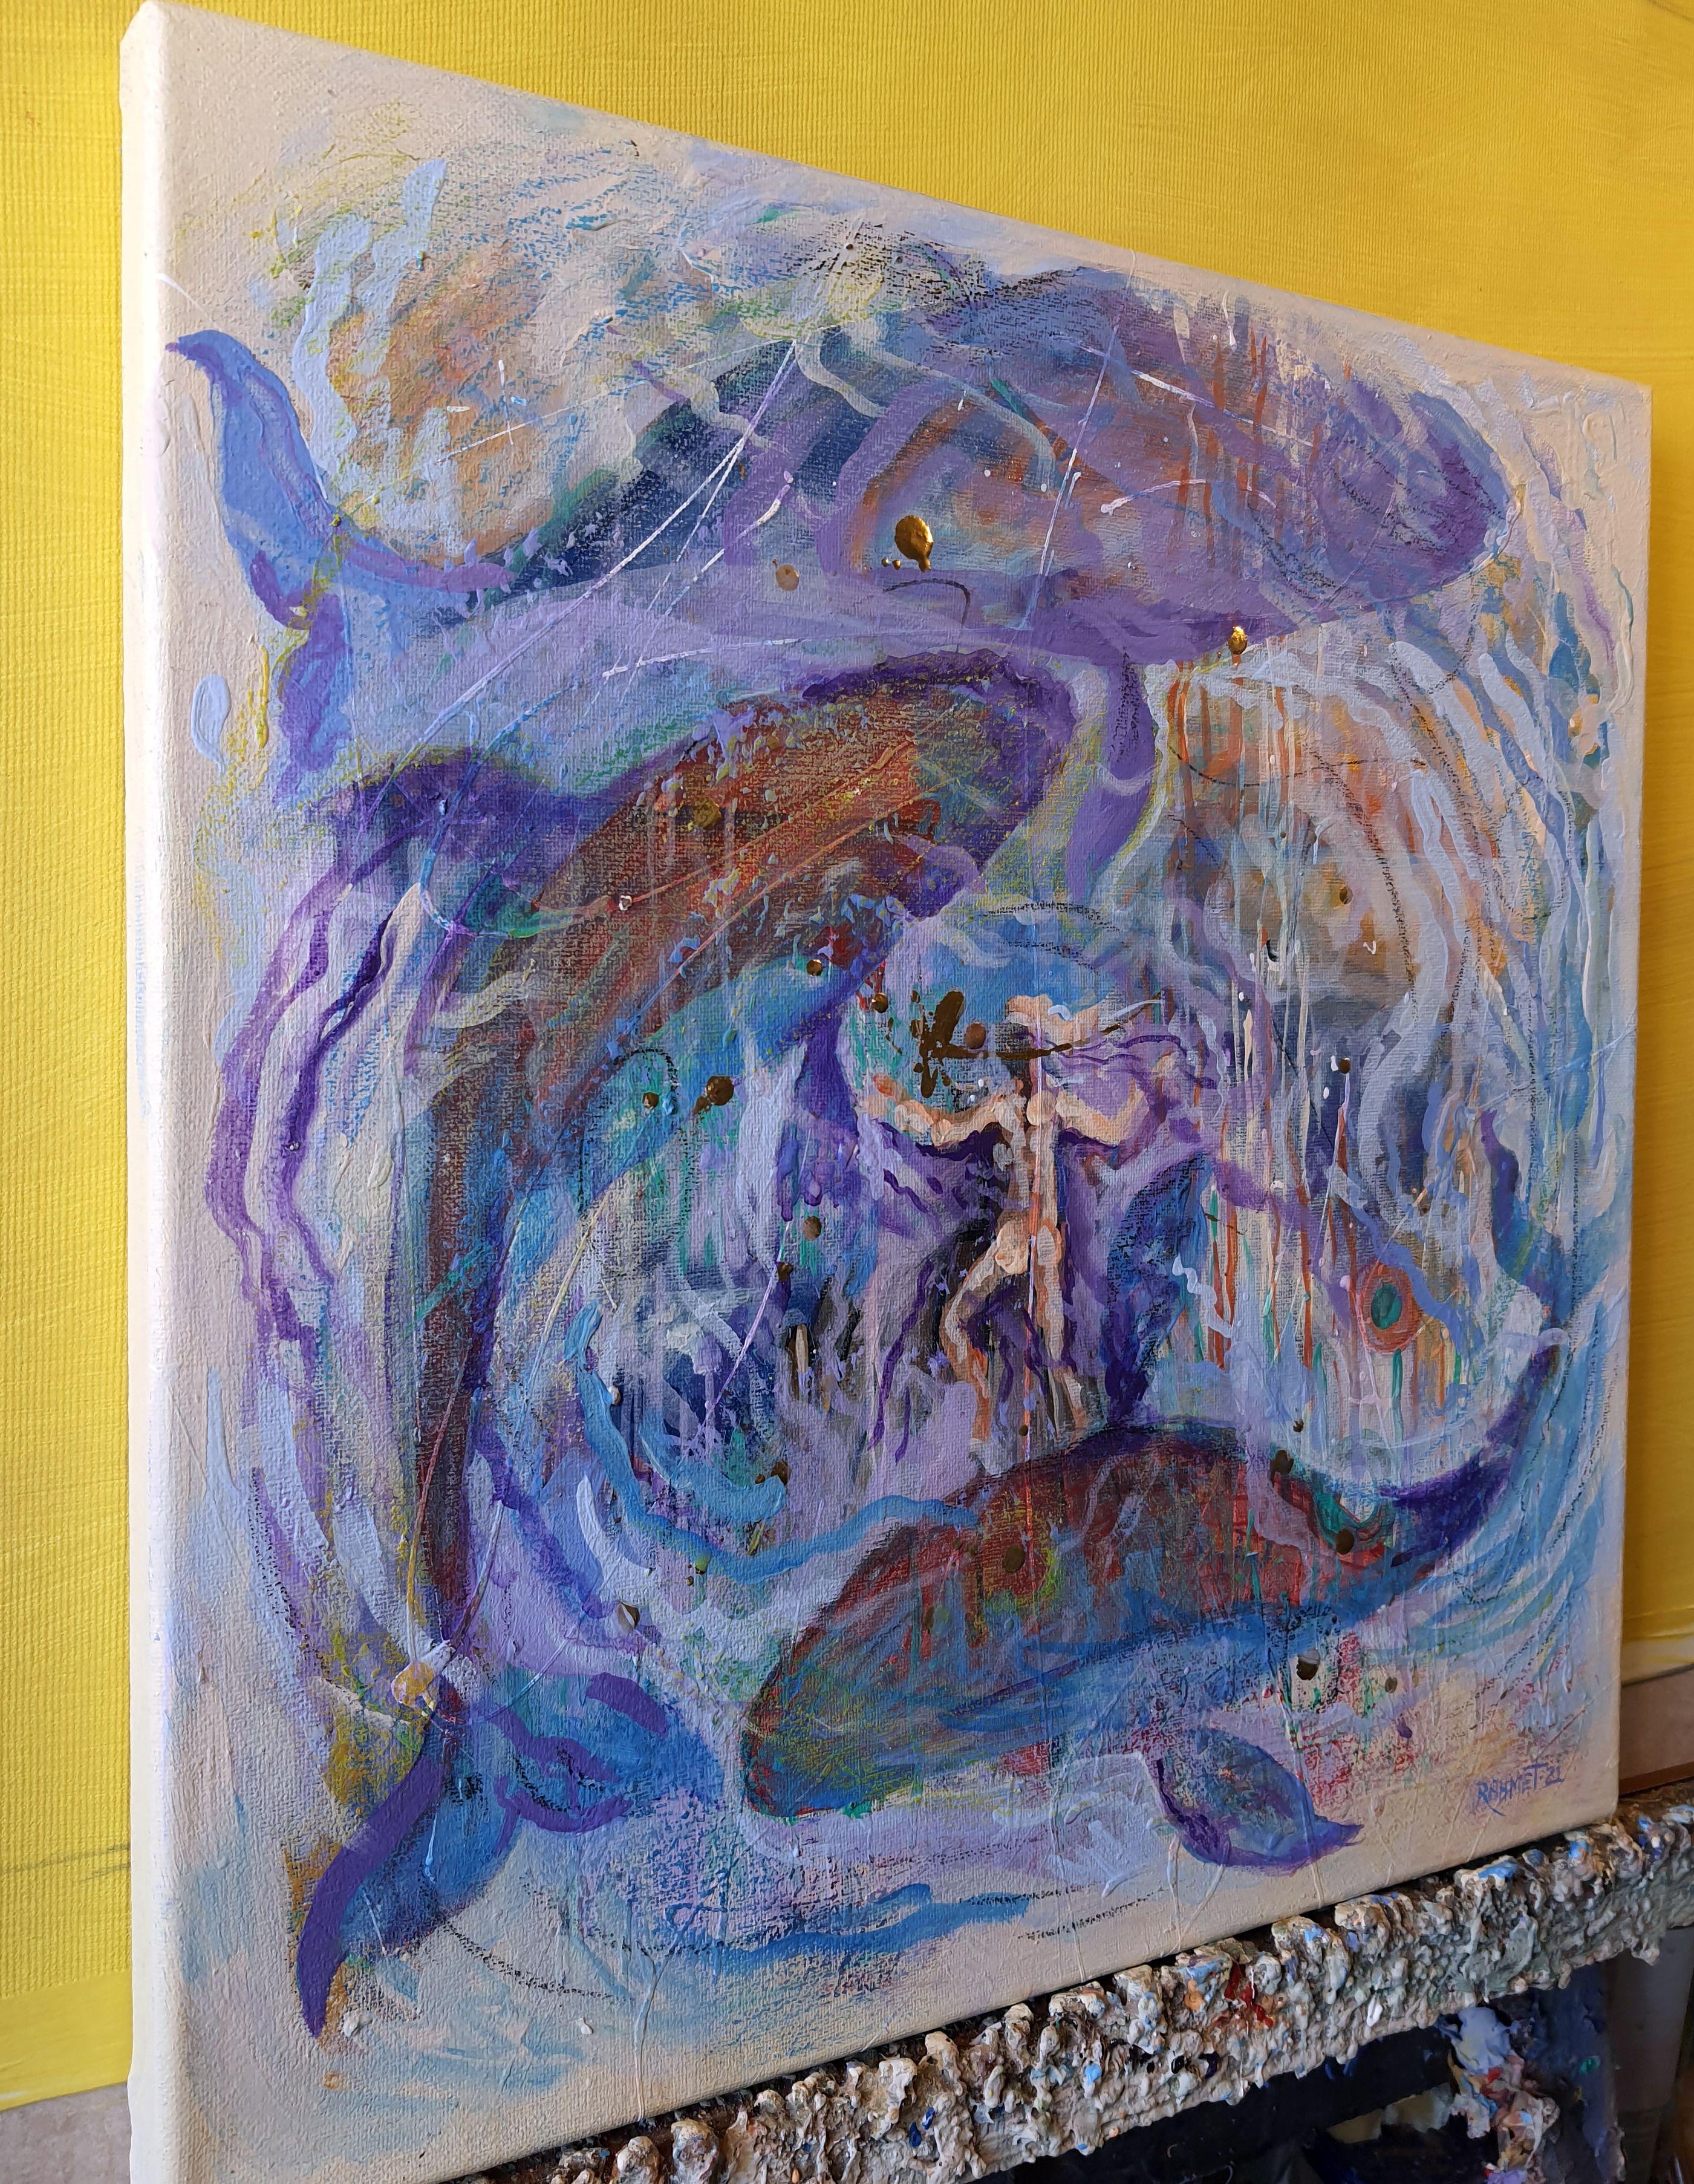 Three Whales - Abstract Painting by RAKHMET REDZHEPOV (RAMZI)